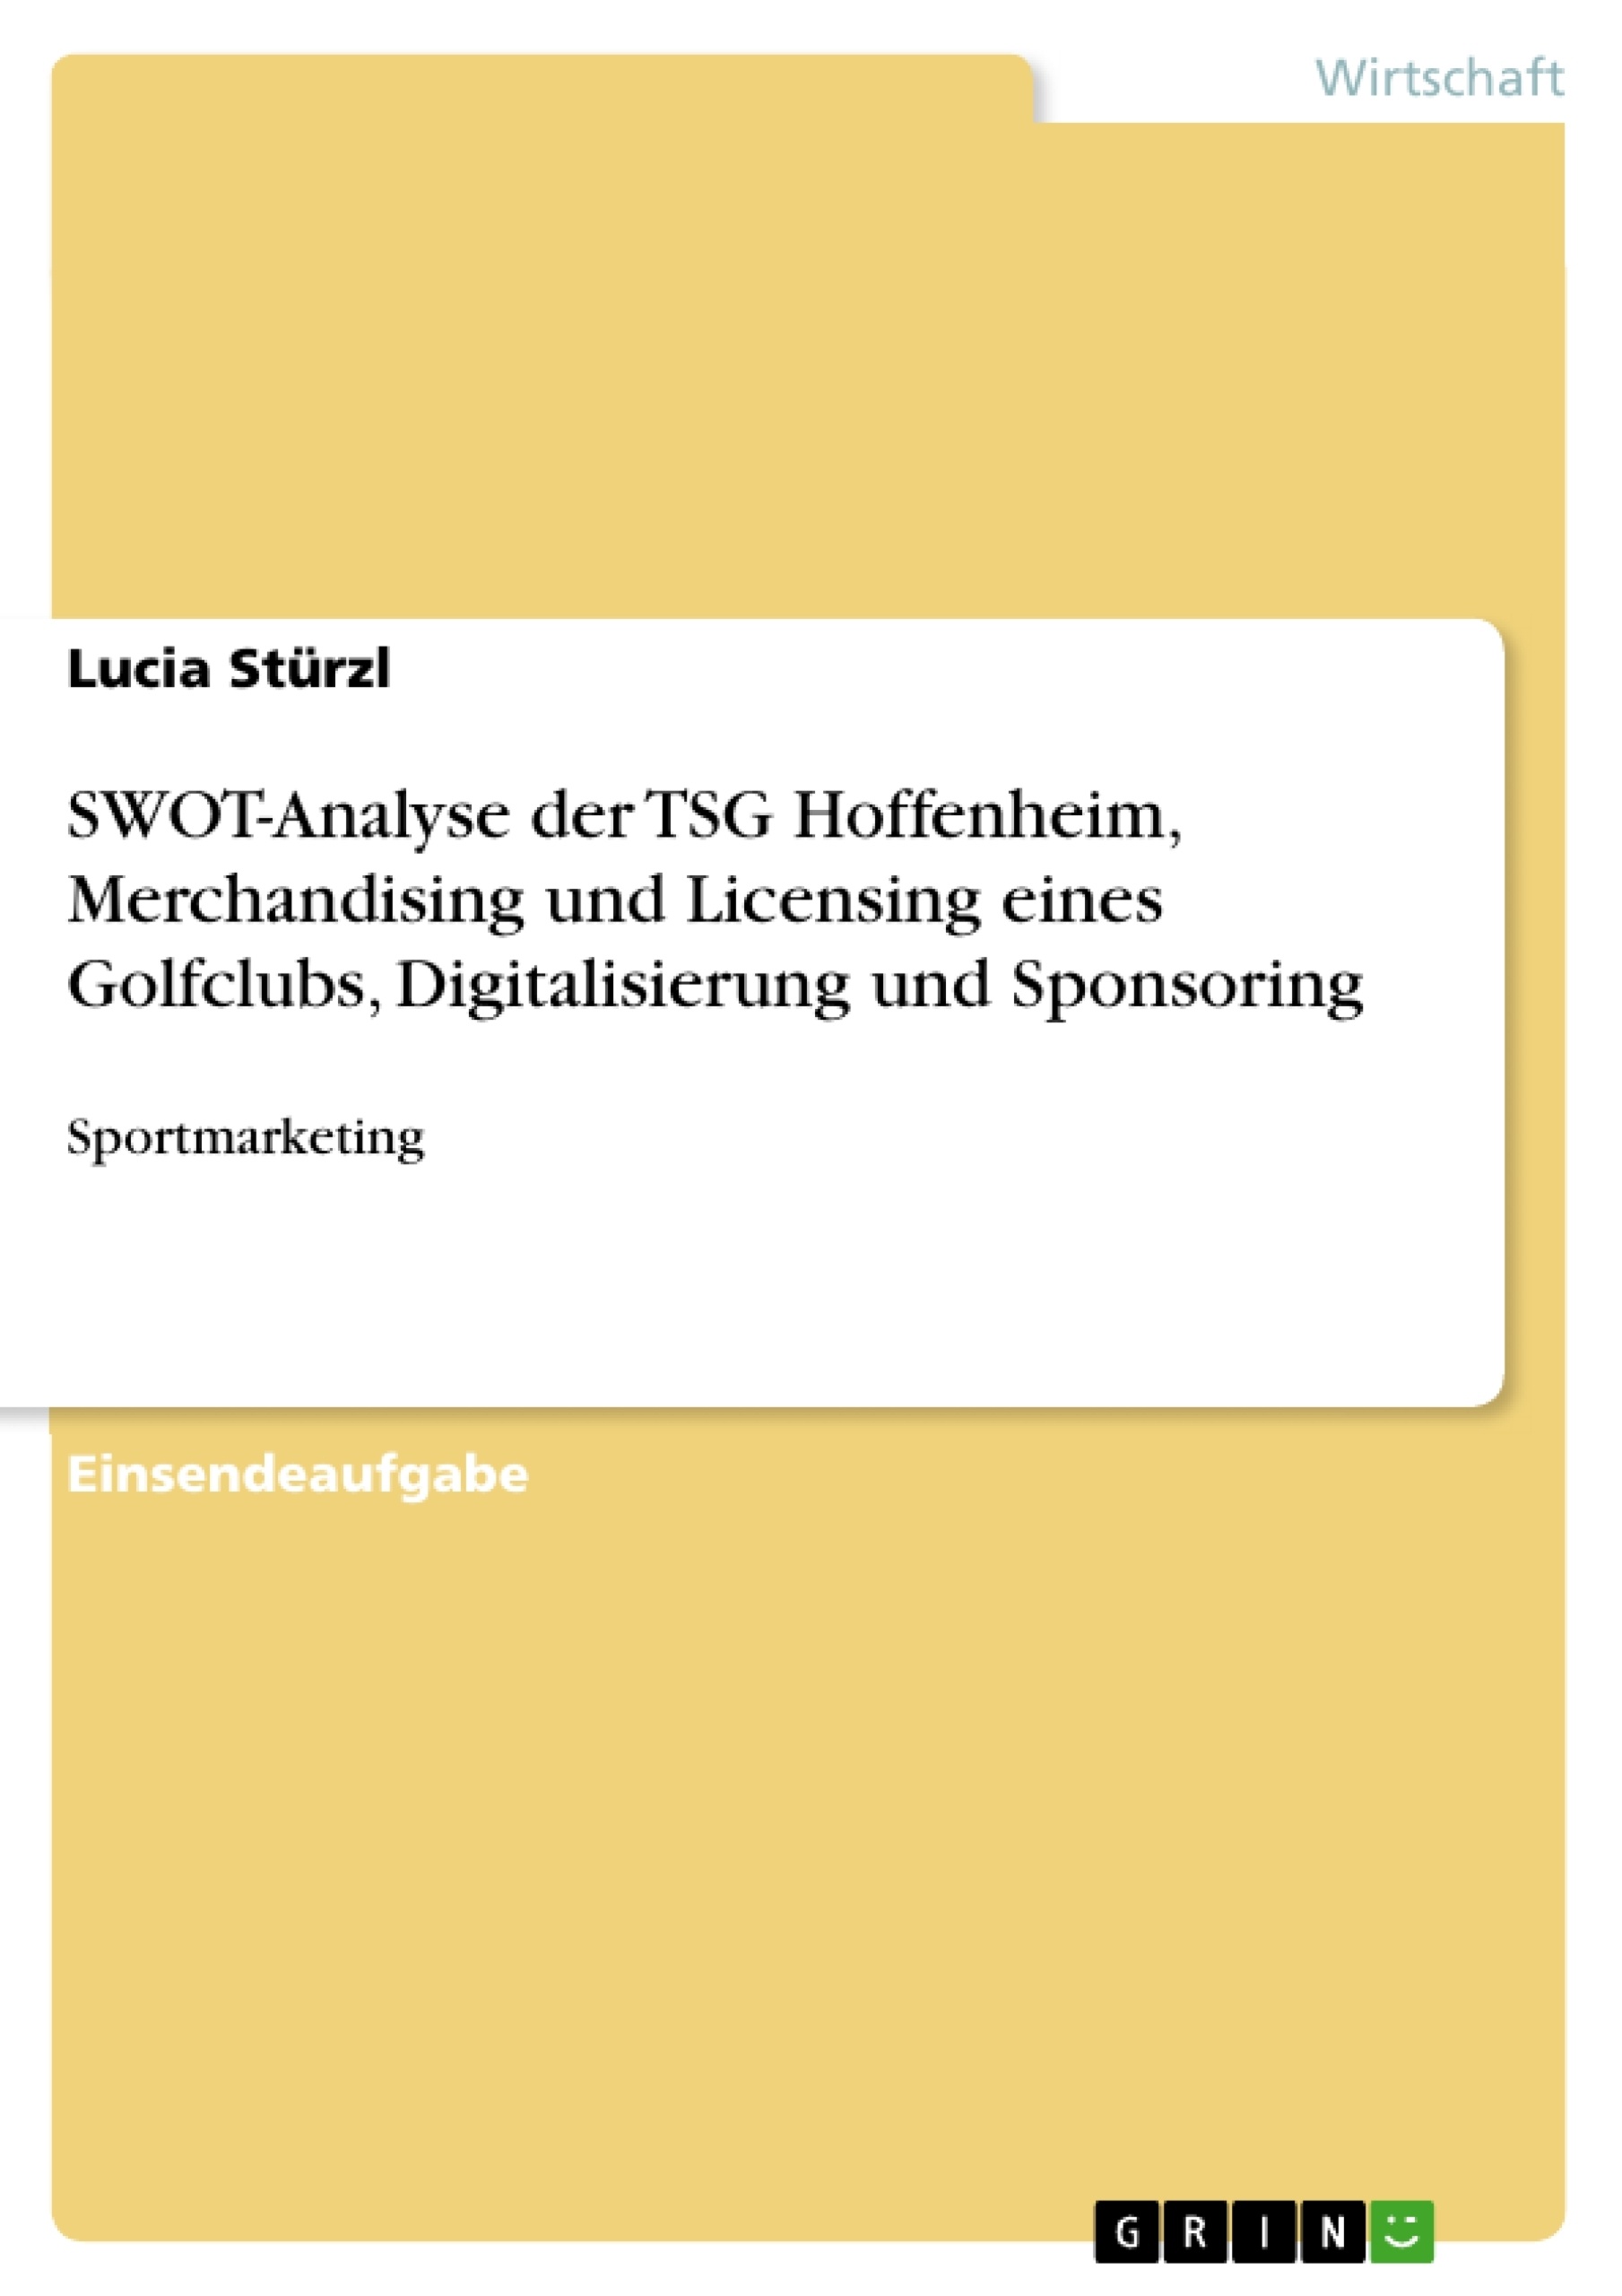 Titel: SWOT-Analyse der TSG Hoffenheim, Merchandising und Licensing eines Golfclubs, Digitalisierung und Sponsoring